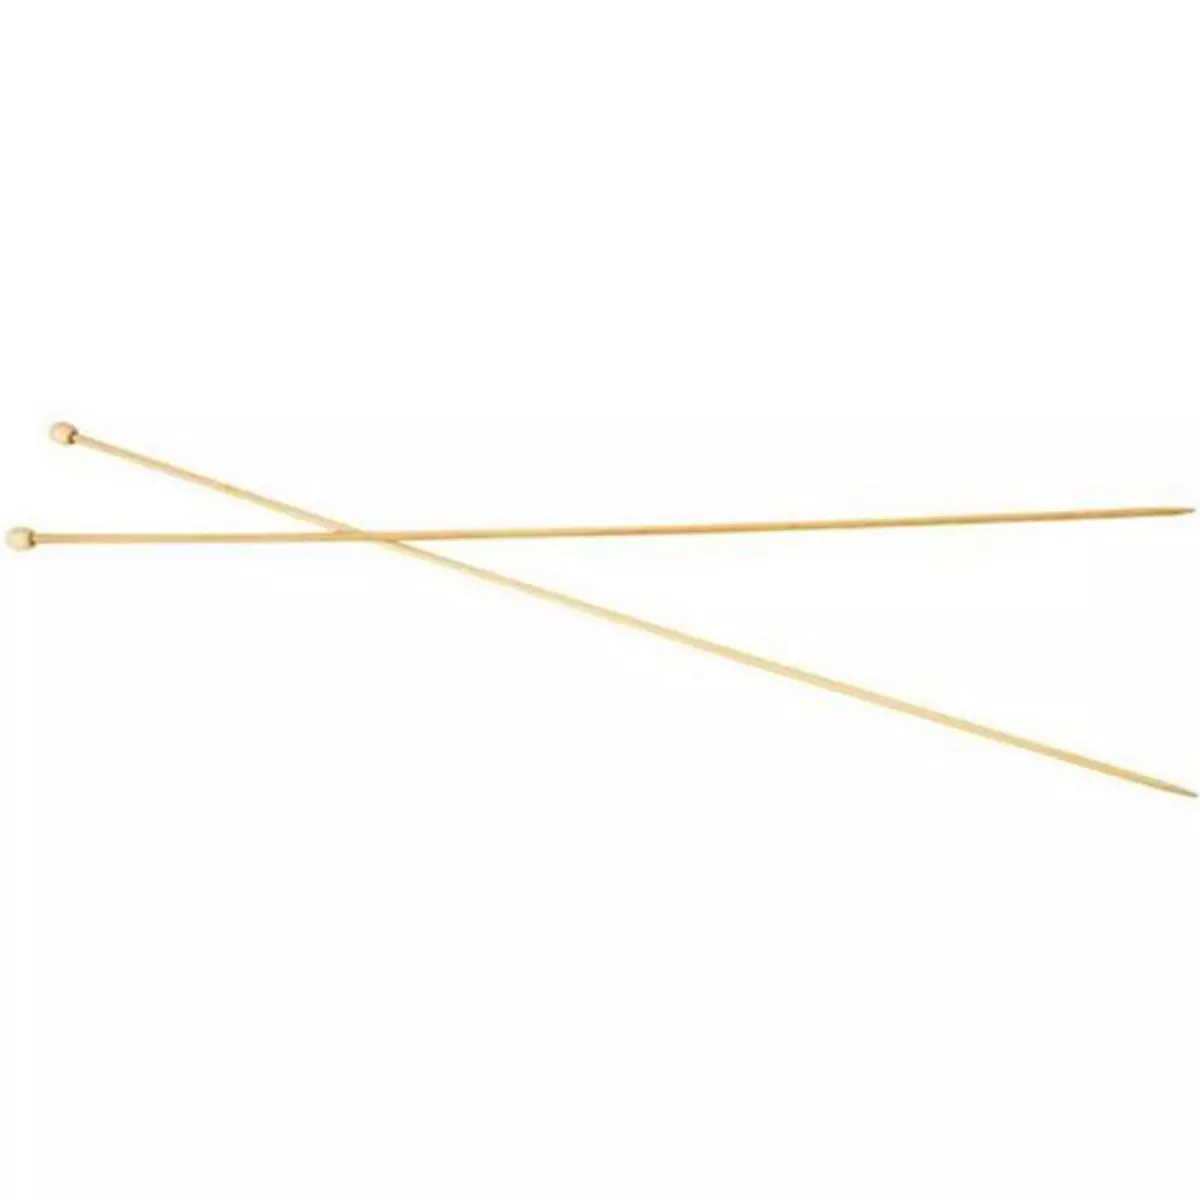  2 Aiguilles À Tricoter En Bambou 35 cm - Ø 2,5 mm